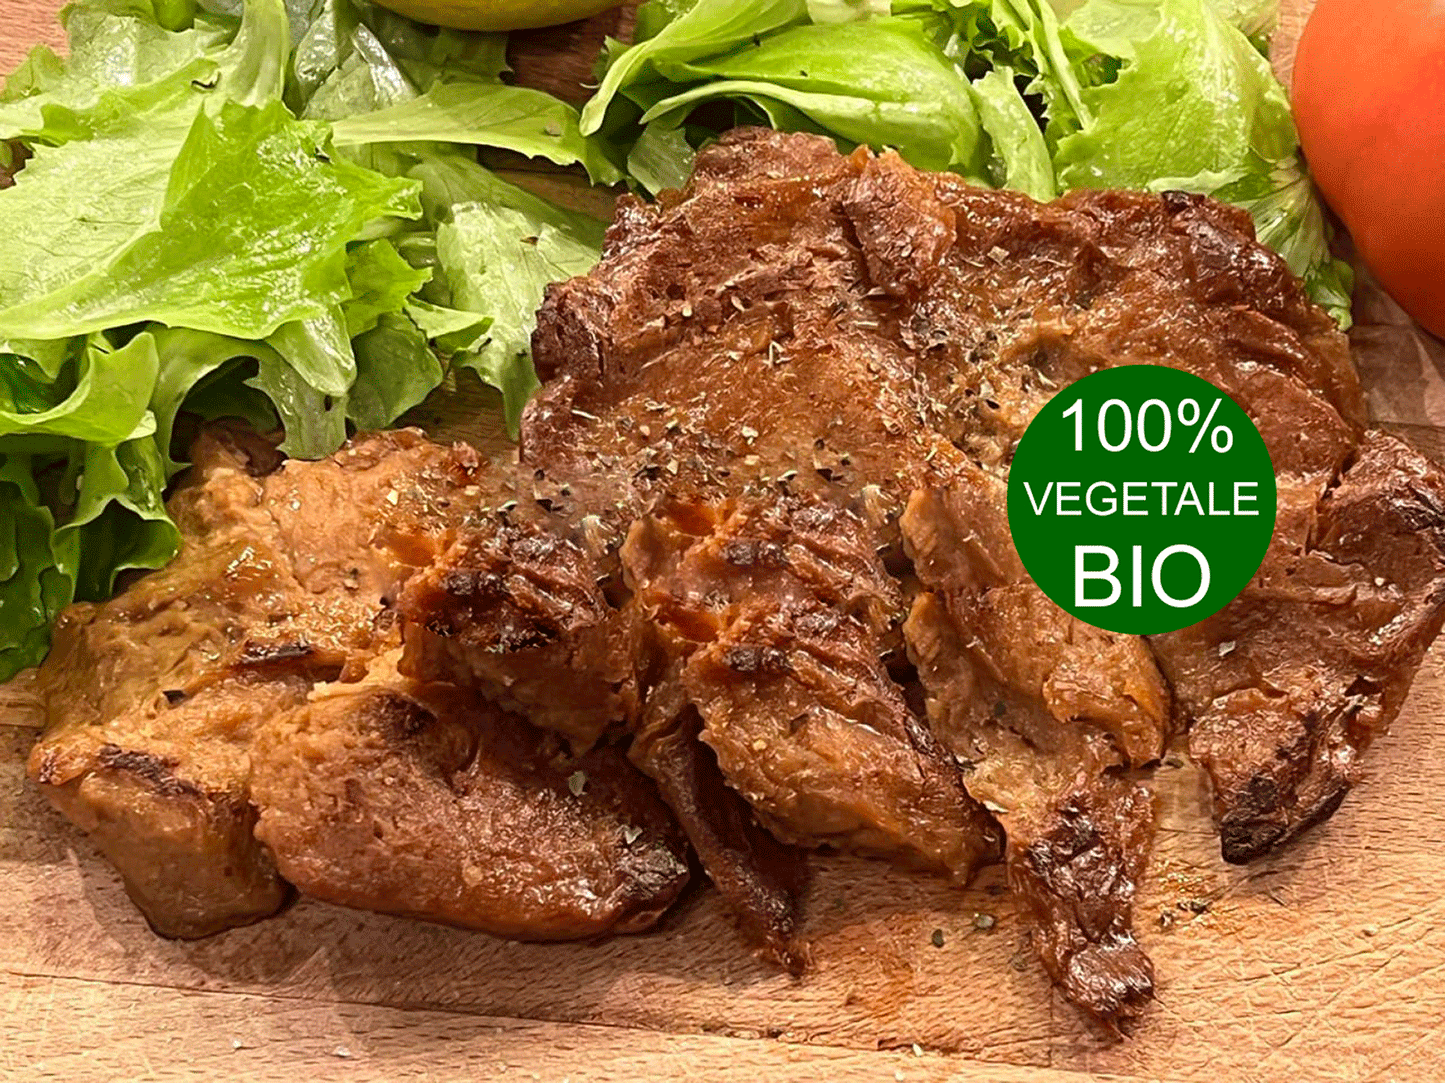 Cicky Crusty - Tutt'Altro - Alimenti 100% Veg&Bio